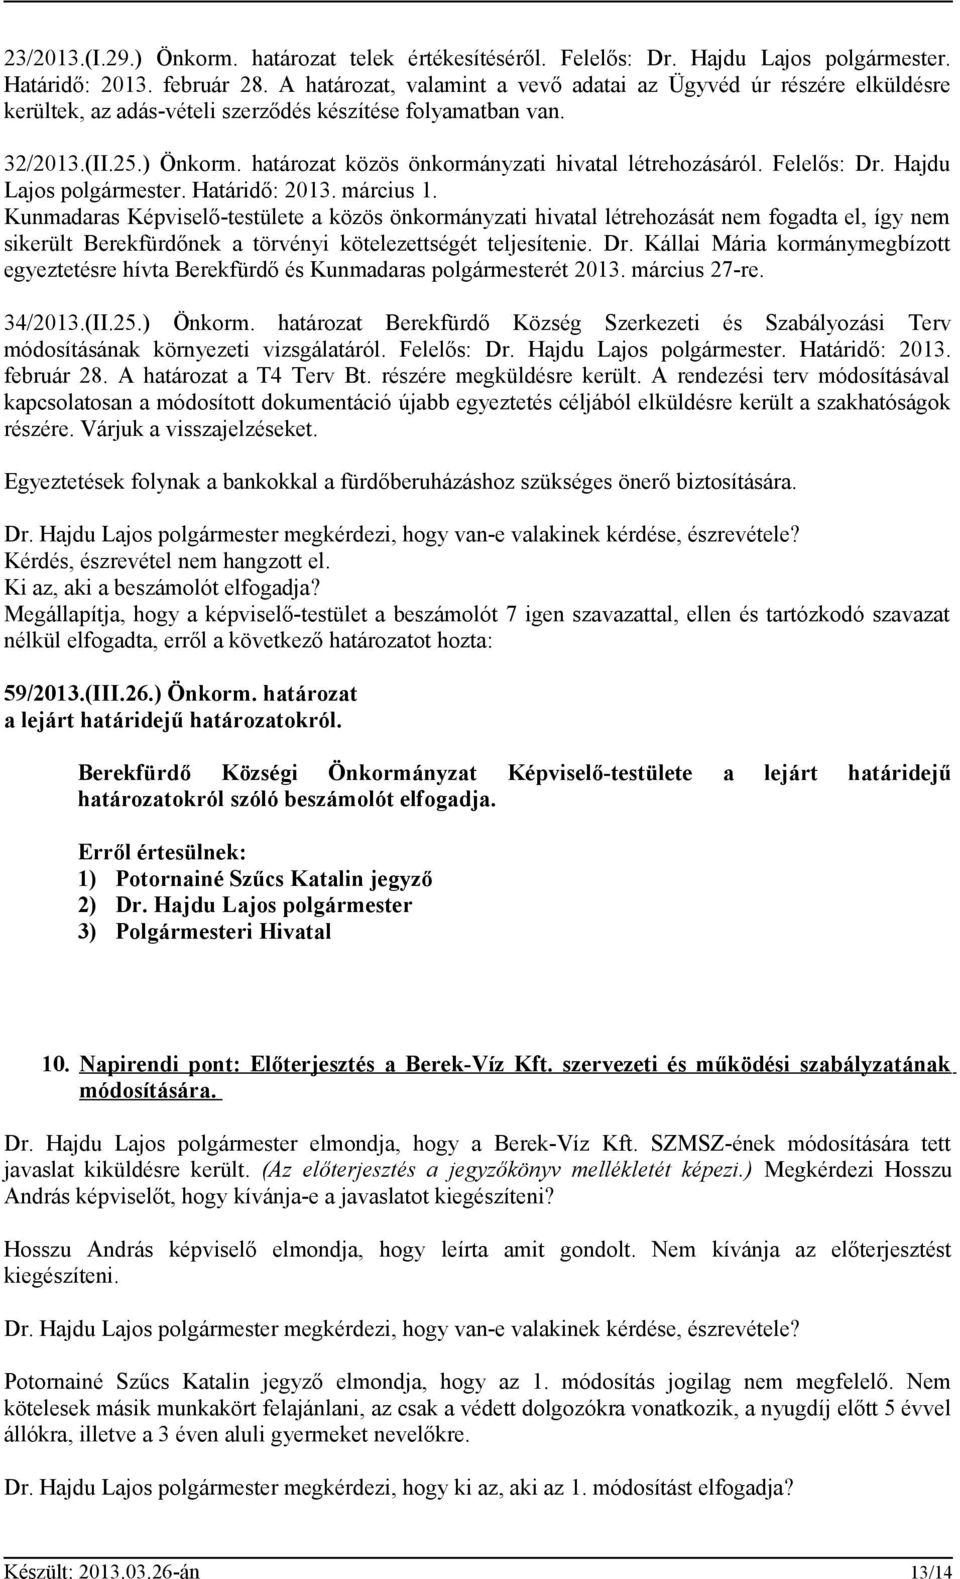 határozat közös önkormányzati hivatal létrehozásáról. Felelős: Dr. Hajdu Lajos polgármester. Határidő: 2013. március 1.